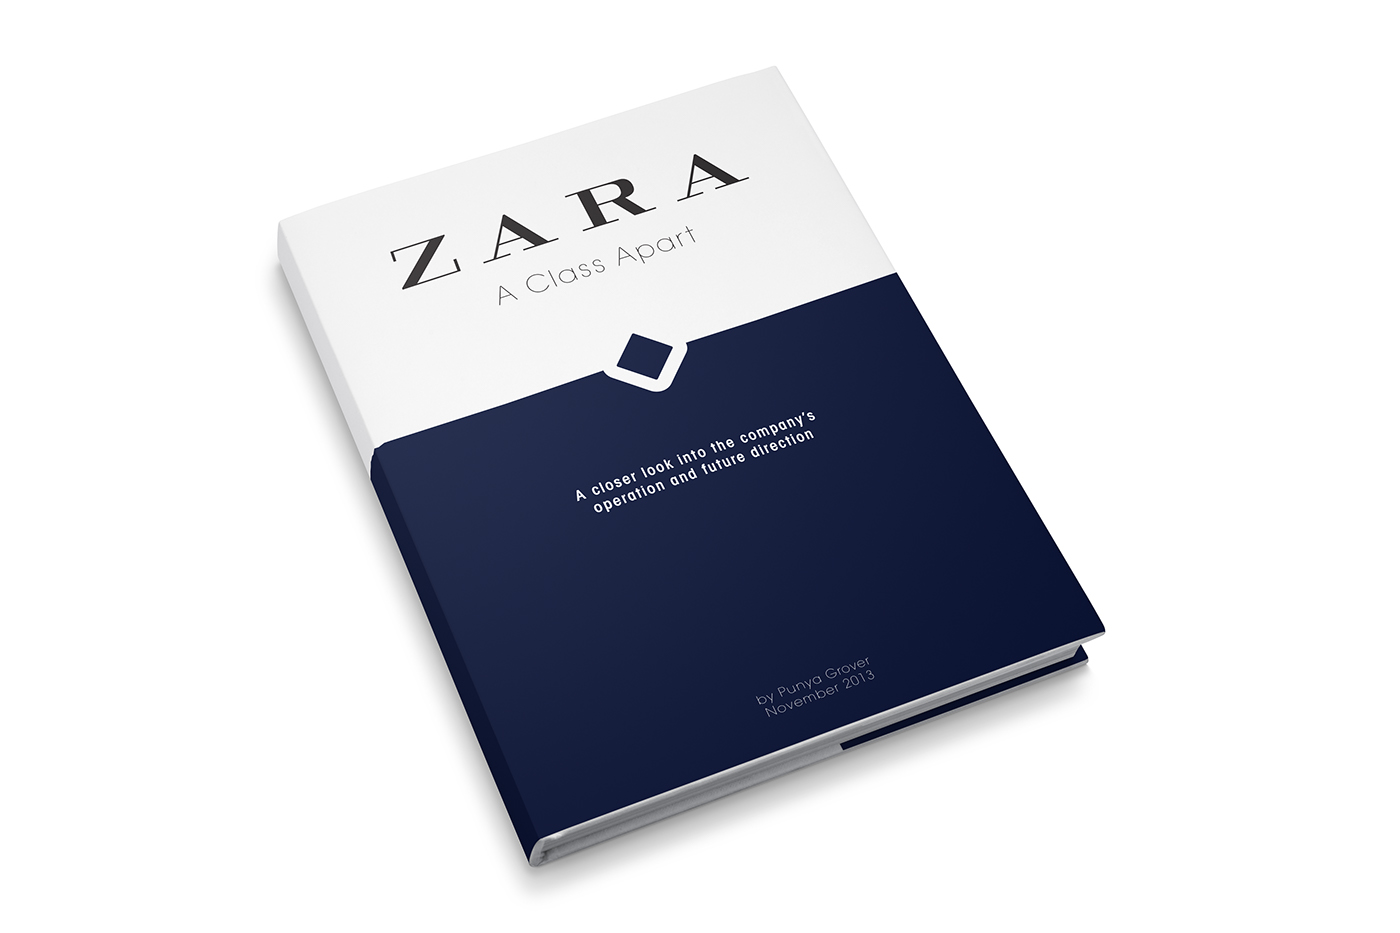 zara case study business studies